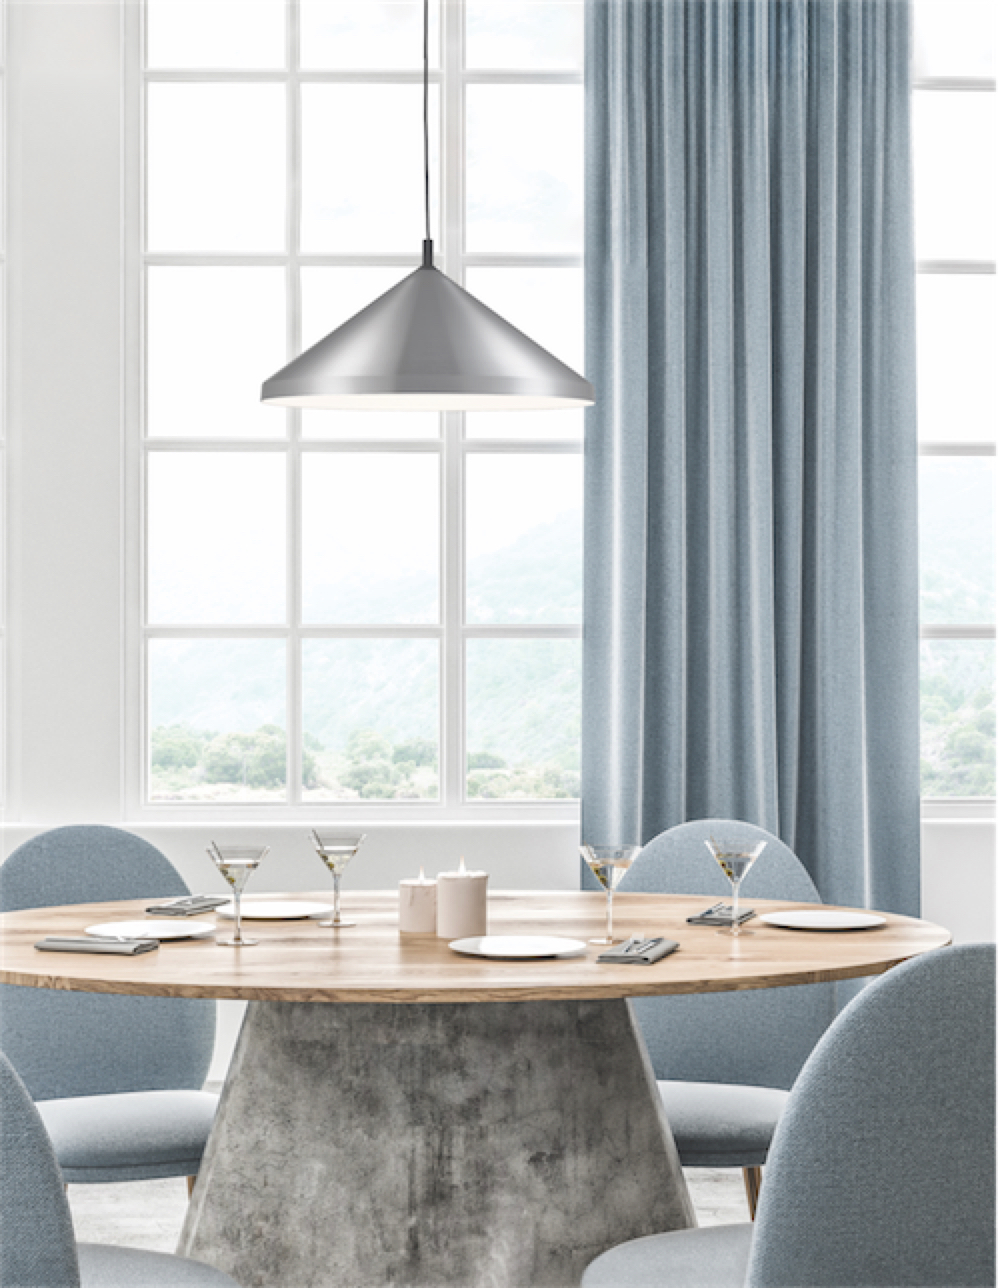 Luminaire suspendu DOROTHY 493118-BN/BK dans la salle à manger au-dessus de la table ronde en bois près de la fenêtre avec rideau gris